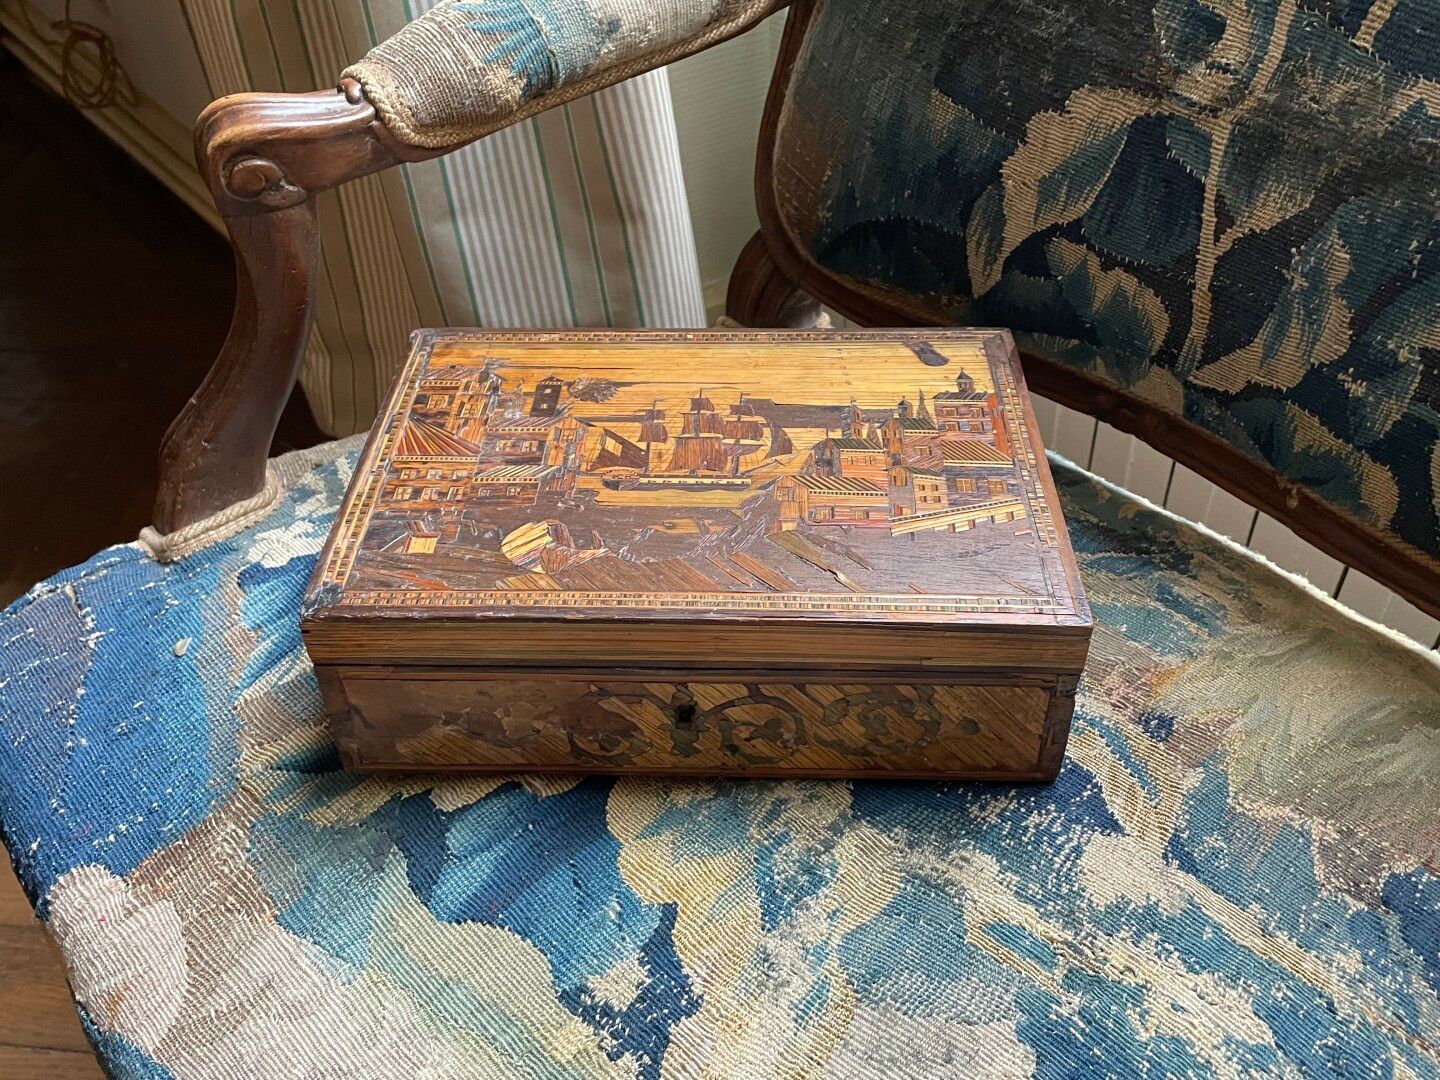 Null 带船形装饰的草编镶嵌盒。

18世纪。

8 x 27 x 19 厘米

失踪。